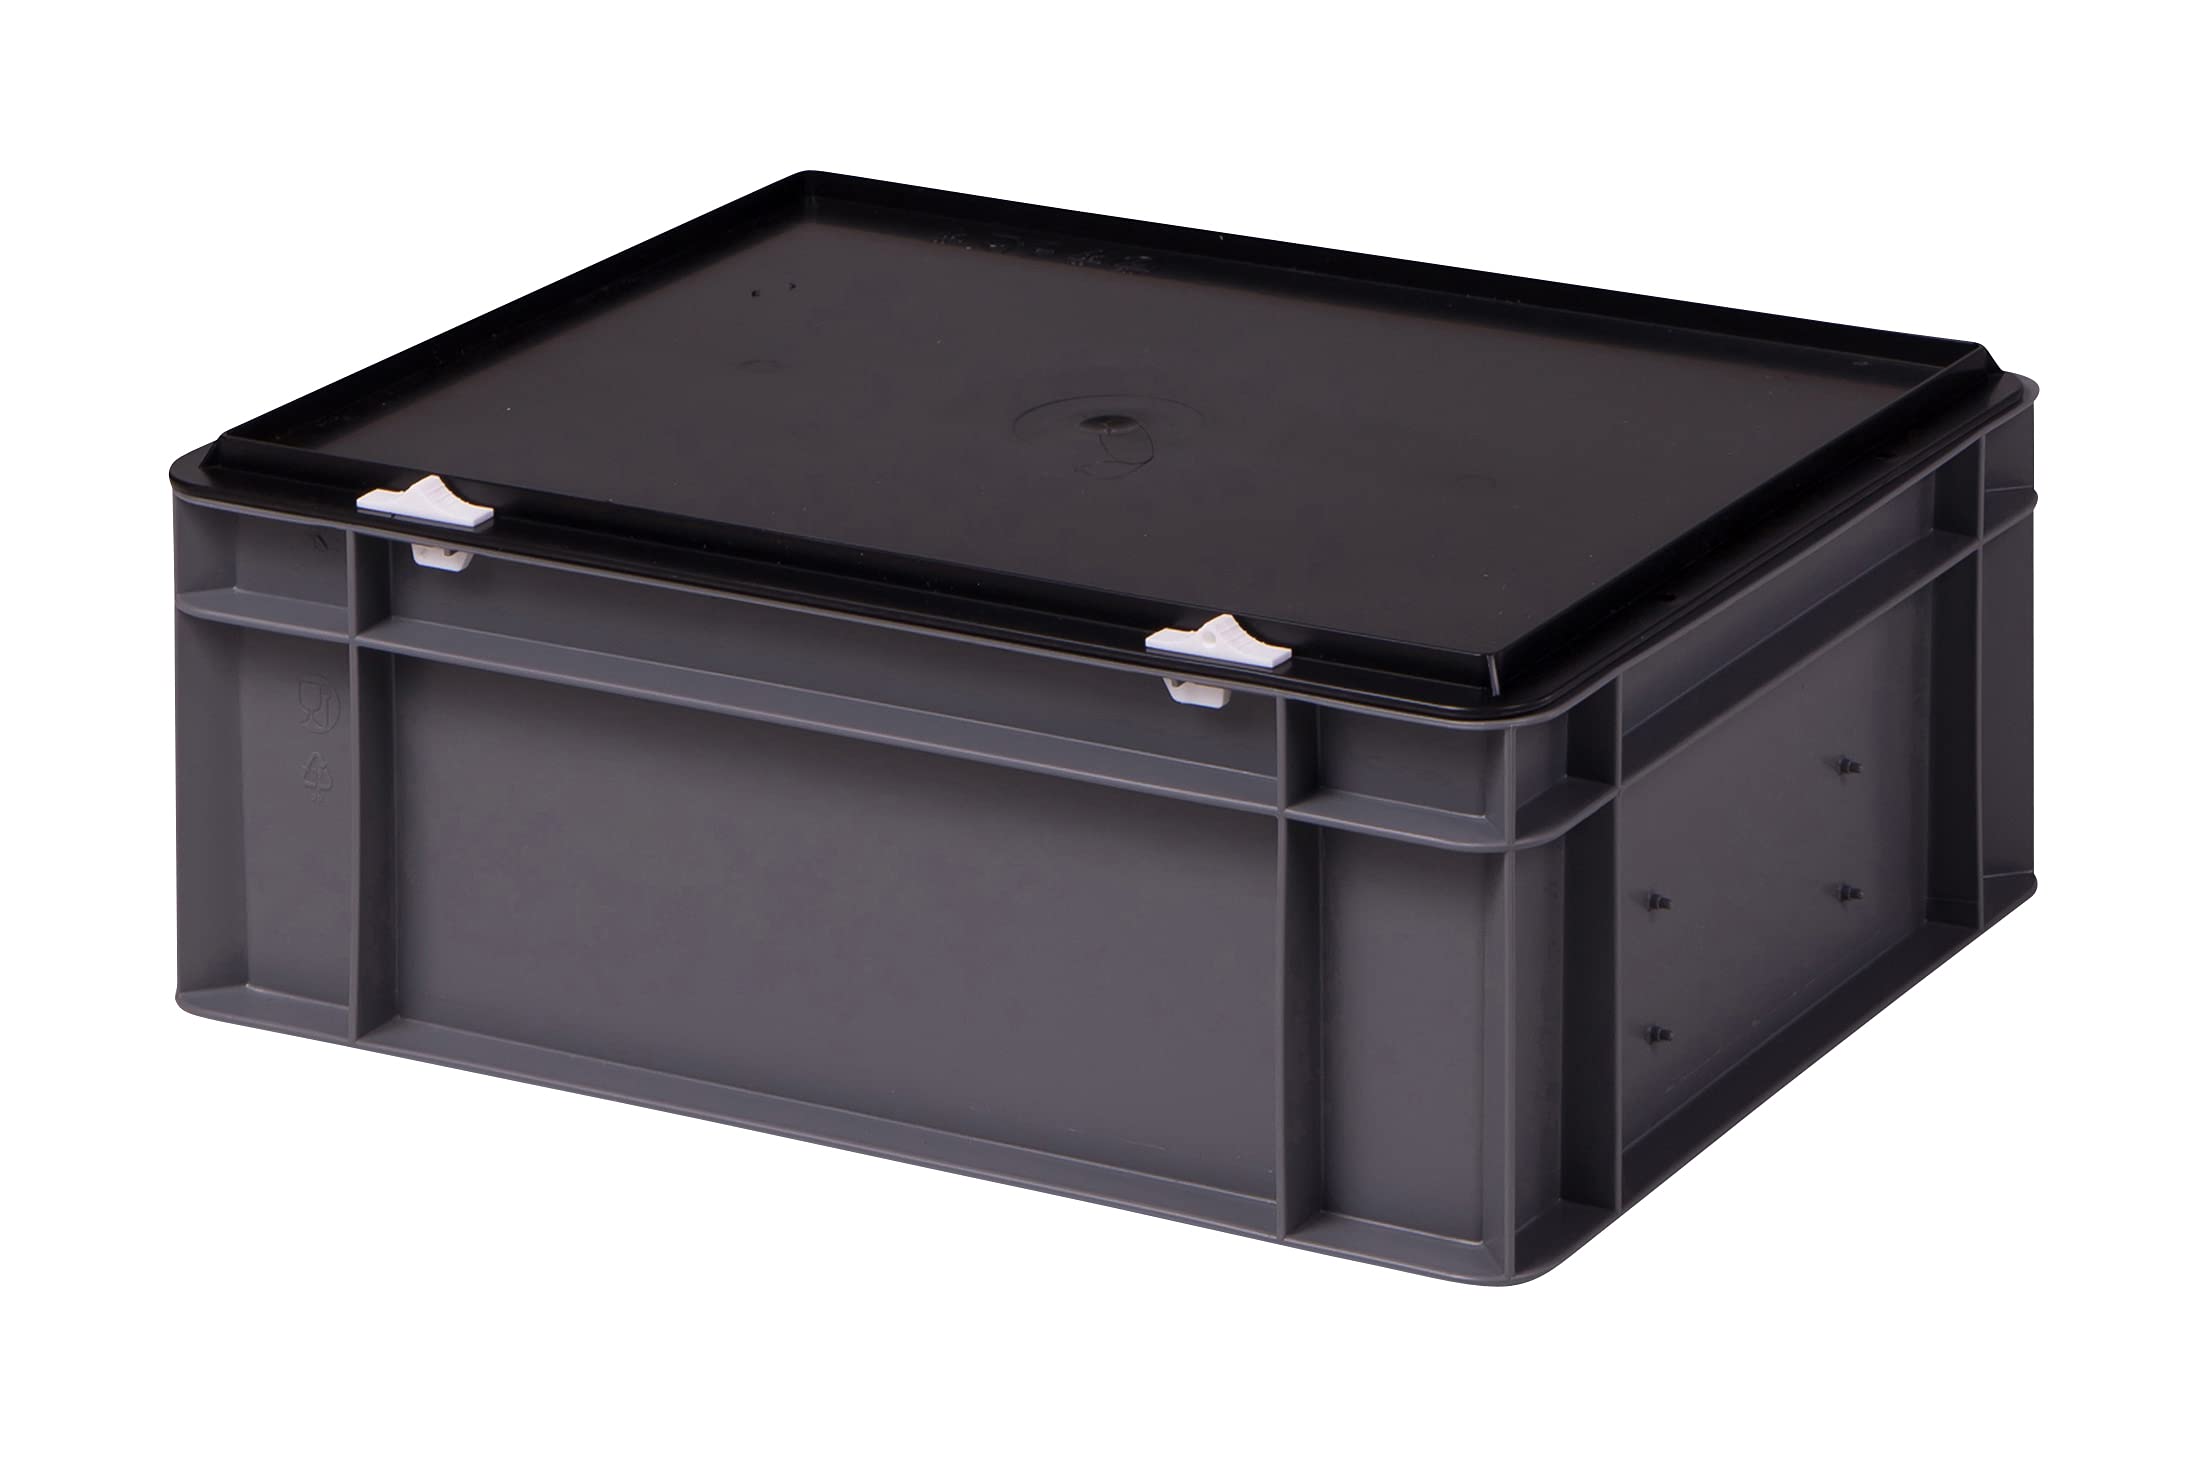 1a-TopStore Stabile Profi Aufbewahrungsbox Stapelbox Eurobox Stapelkiste mit Deckel, Kunststoffkiste lieferbar in 5 Farben und 21 Größen für Industrie, Gewerbe, Haushalt (grau, 40x30x15 cm)